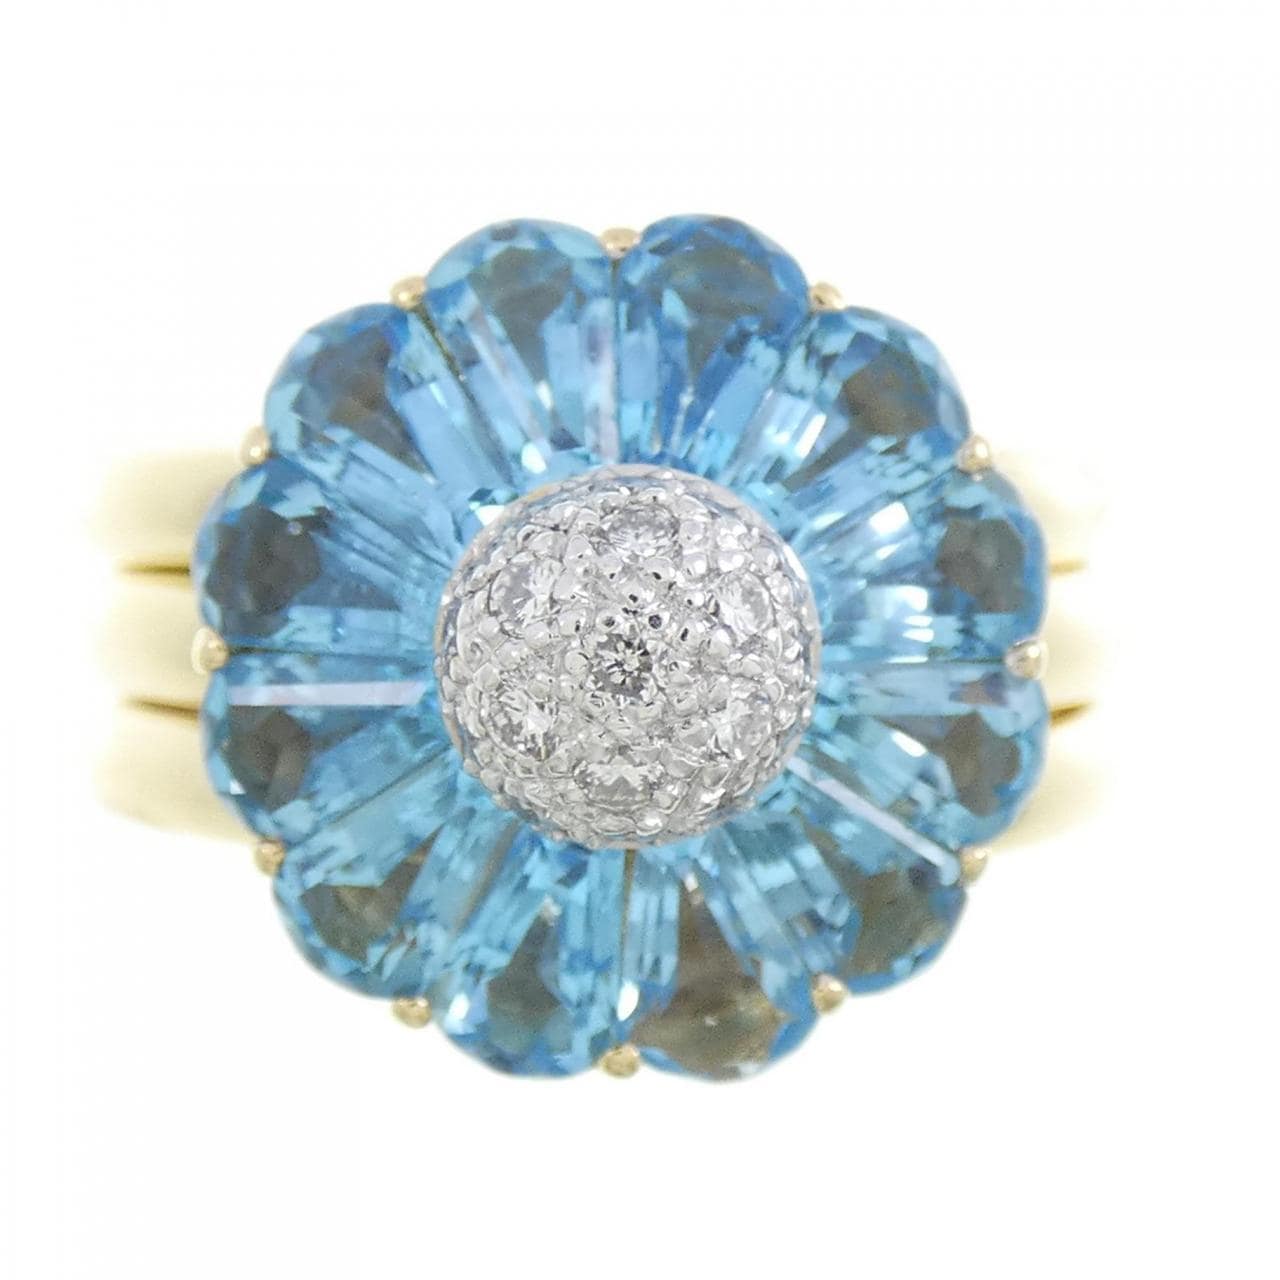 K18YG/K18WG 花朵蓝色托帕石戒指 3.65 克拉